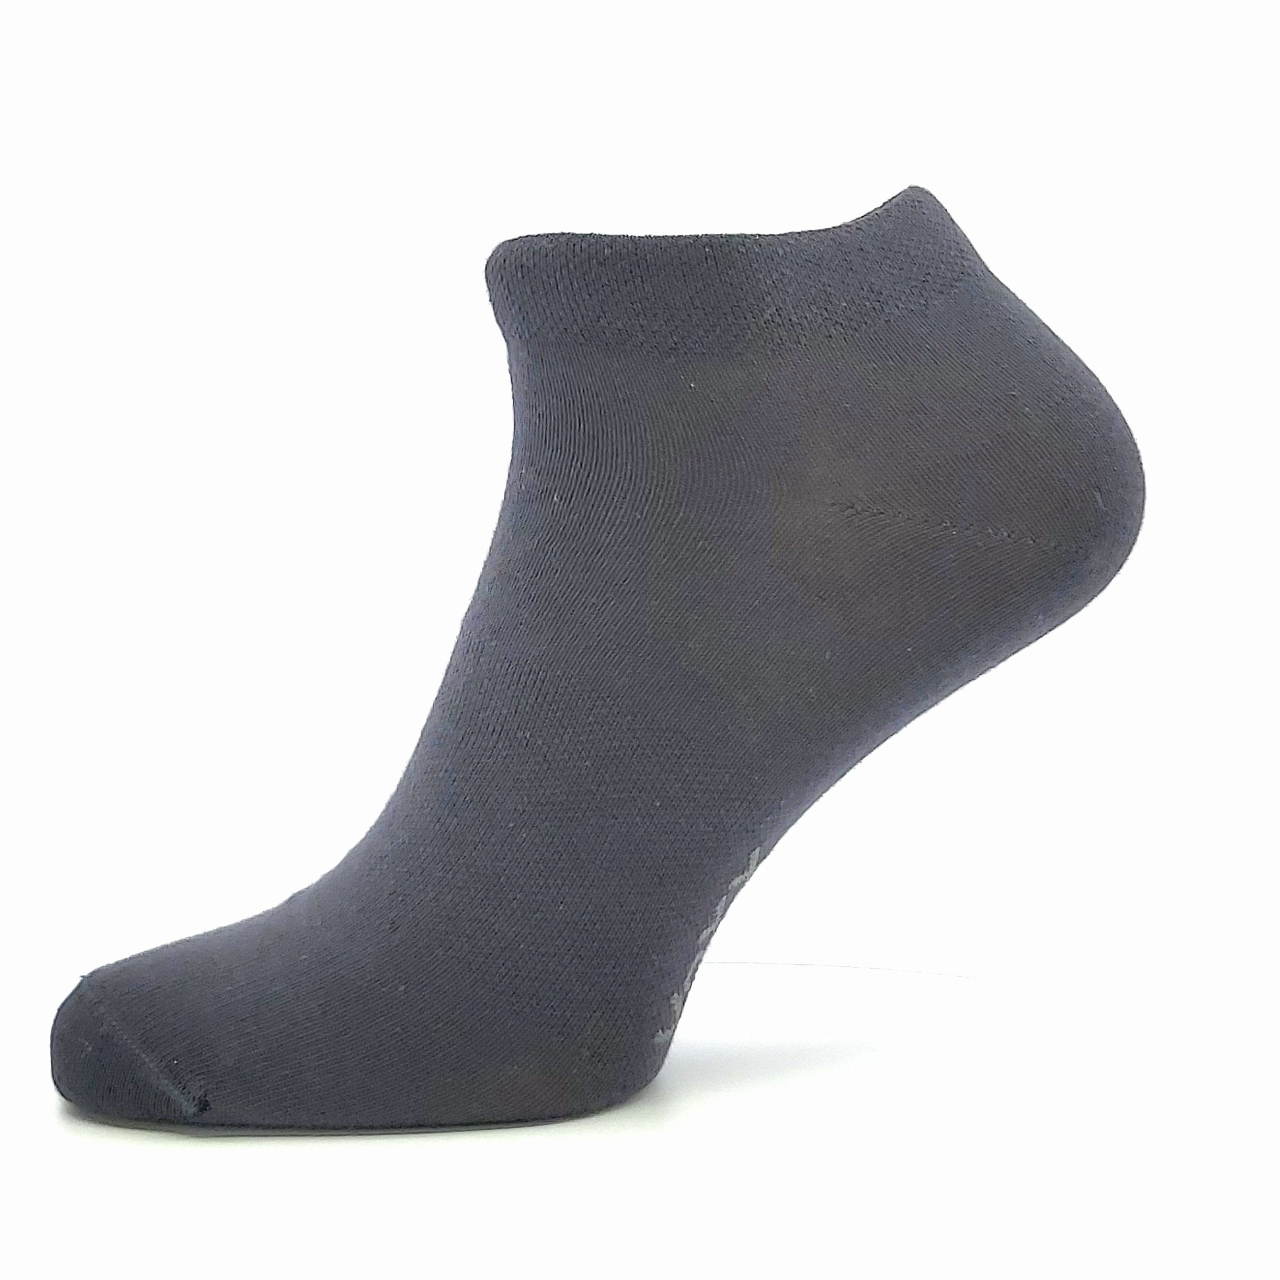 Ponožky unisex Voxx Rex 00 - tmavě šedé, 43-46